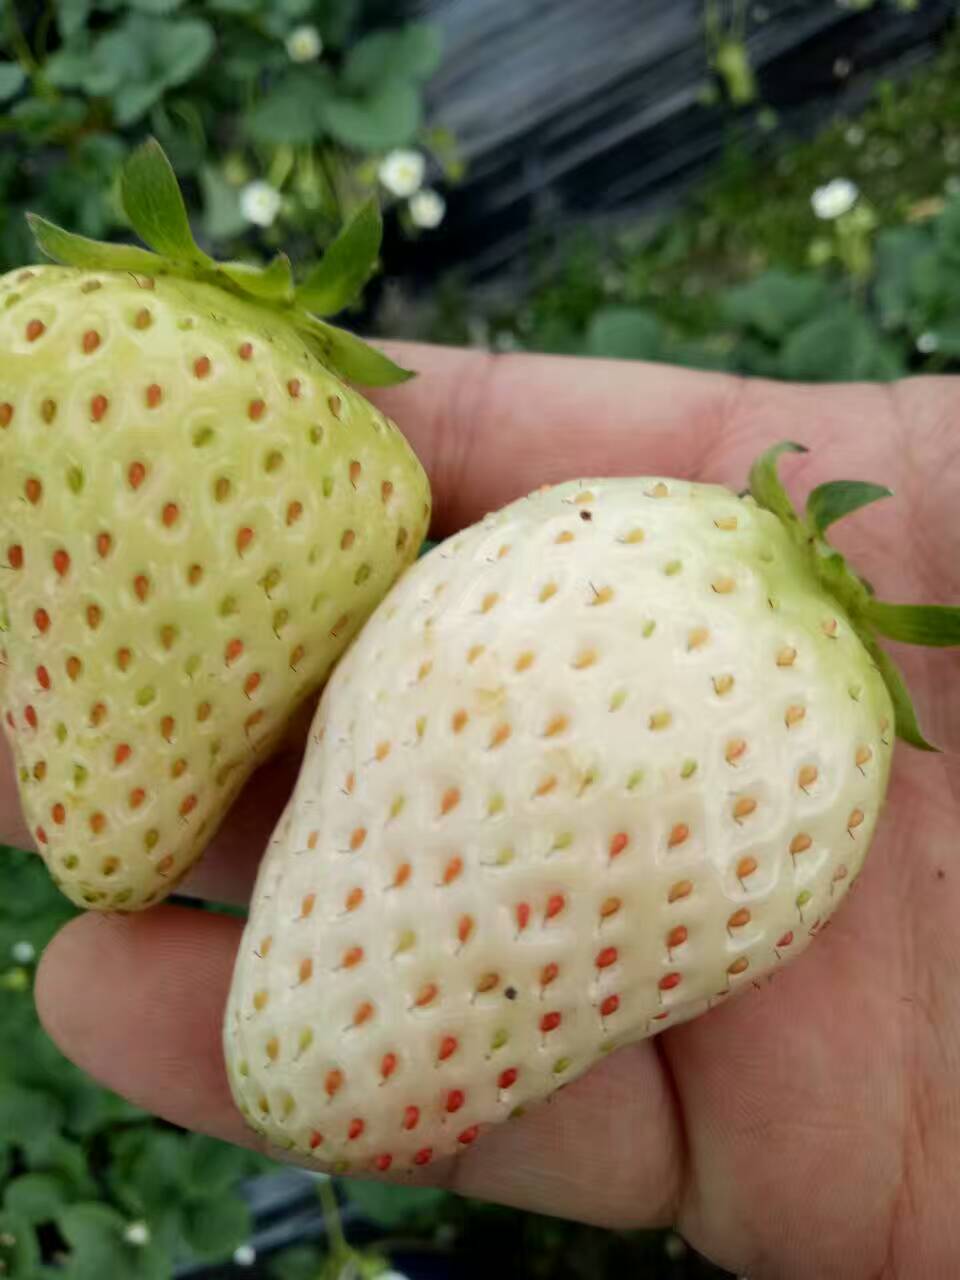 红颜草莓苗一亩地产量欢迎考察